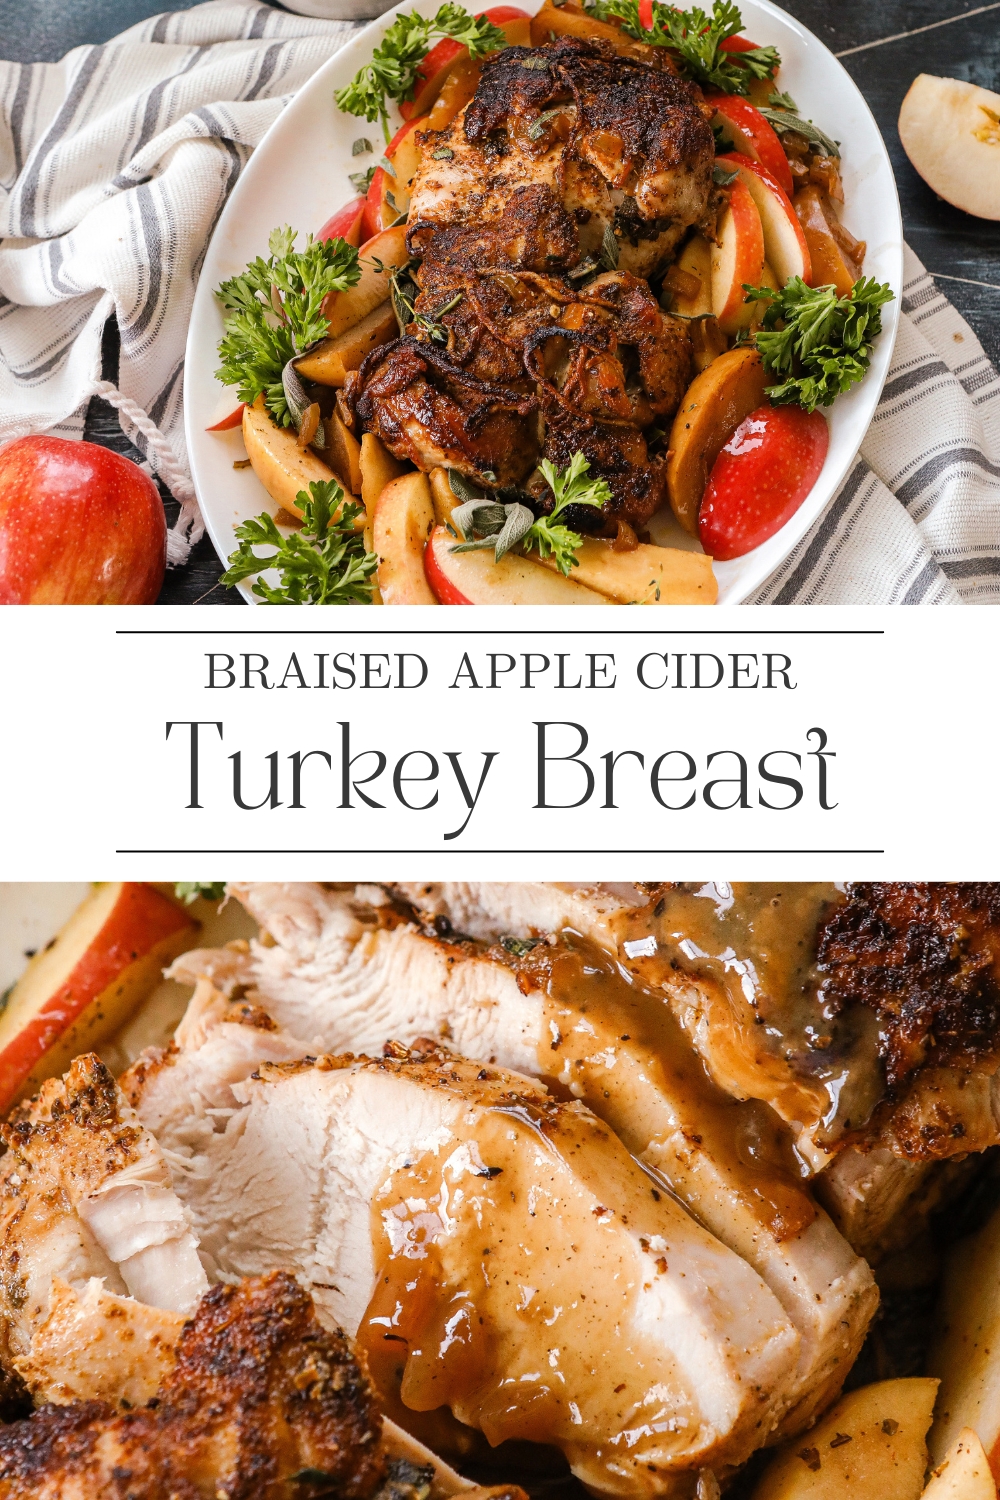 Braised Apple Cider Turkey Breast recipe